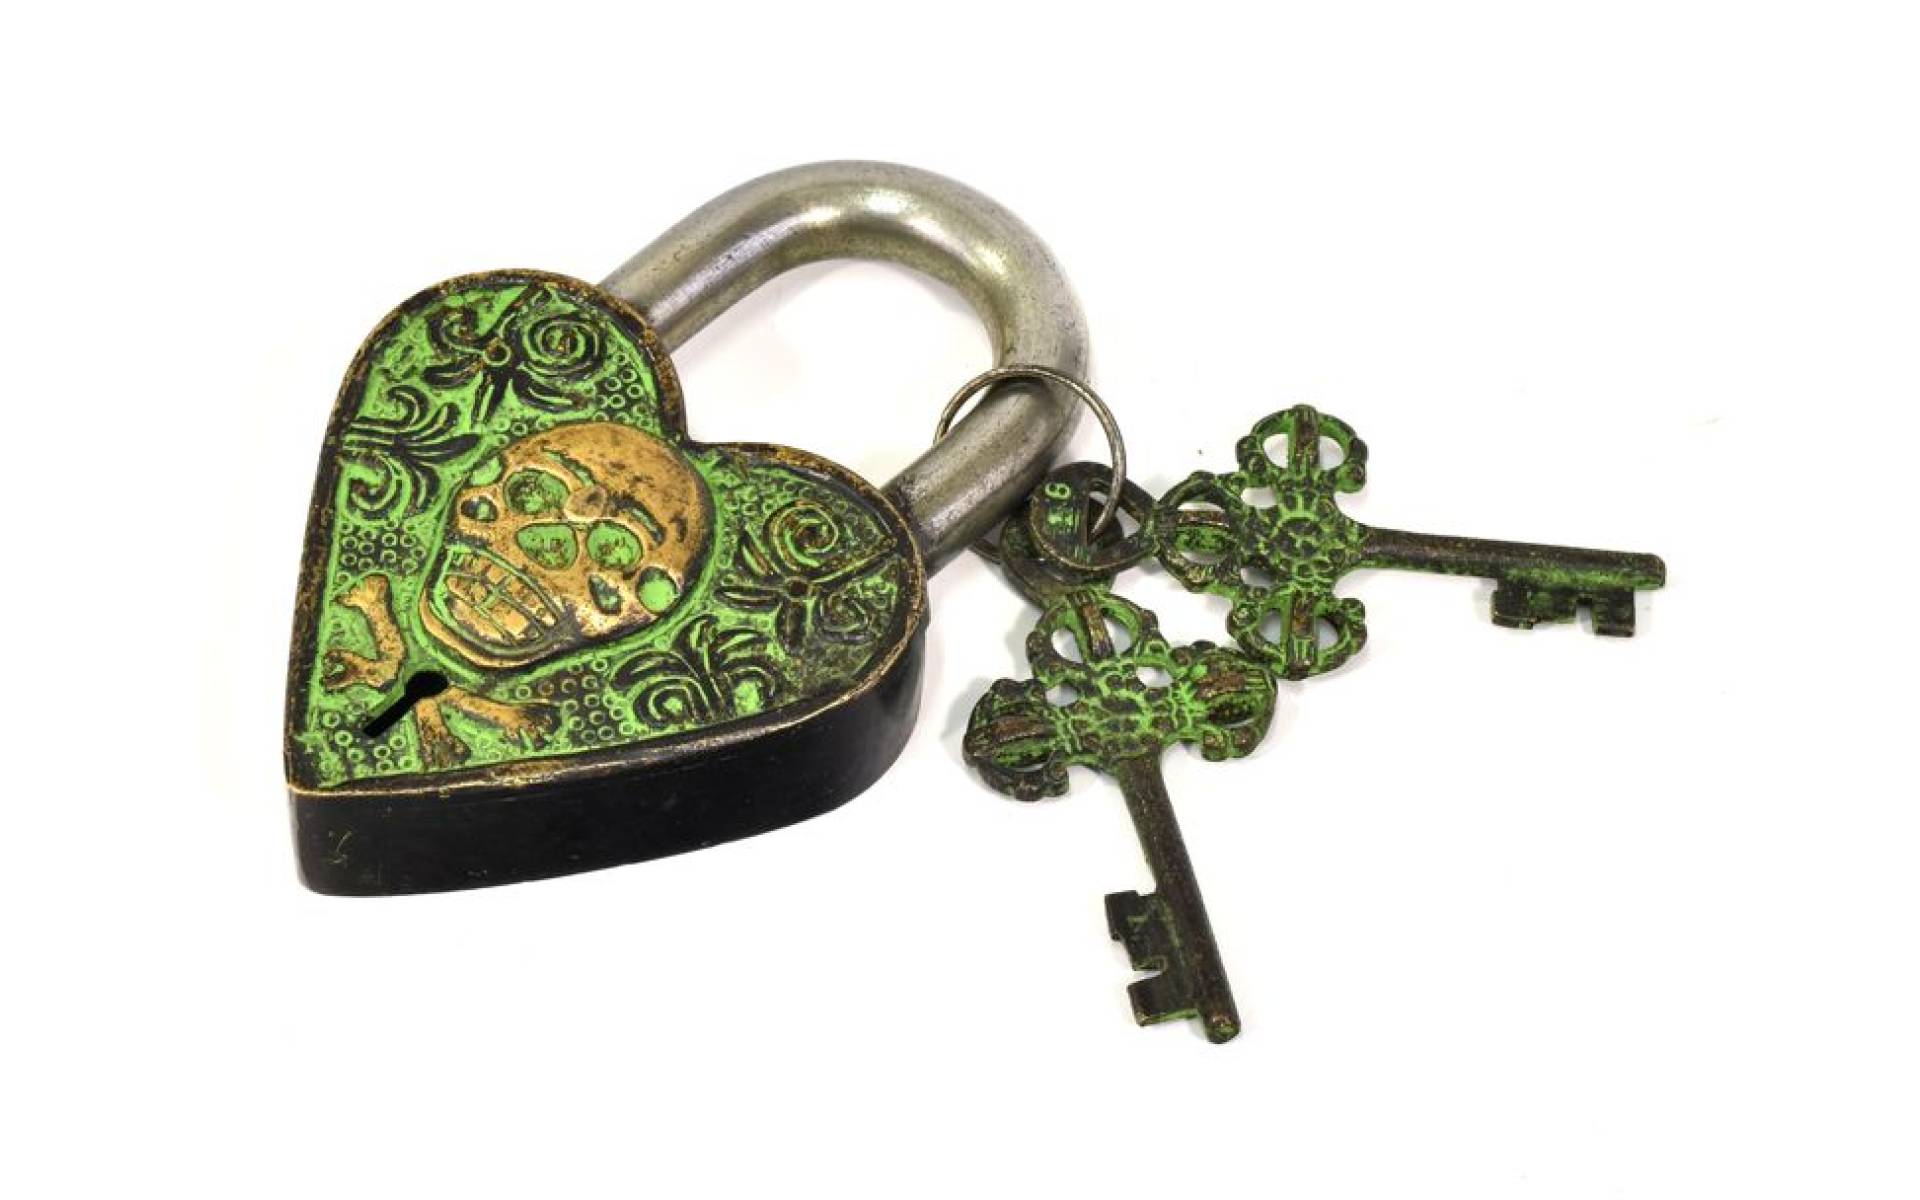 Visiaci zámok, srdce s lebkou, zelená mosadz, dva kľúče v tvare dorje, 12cm